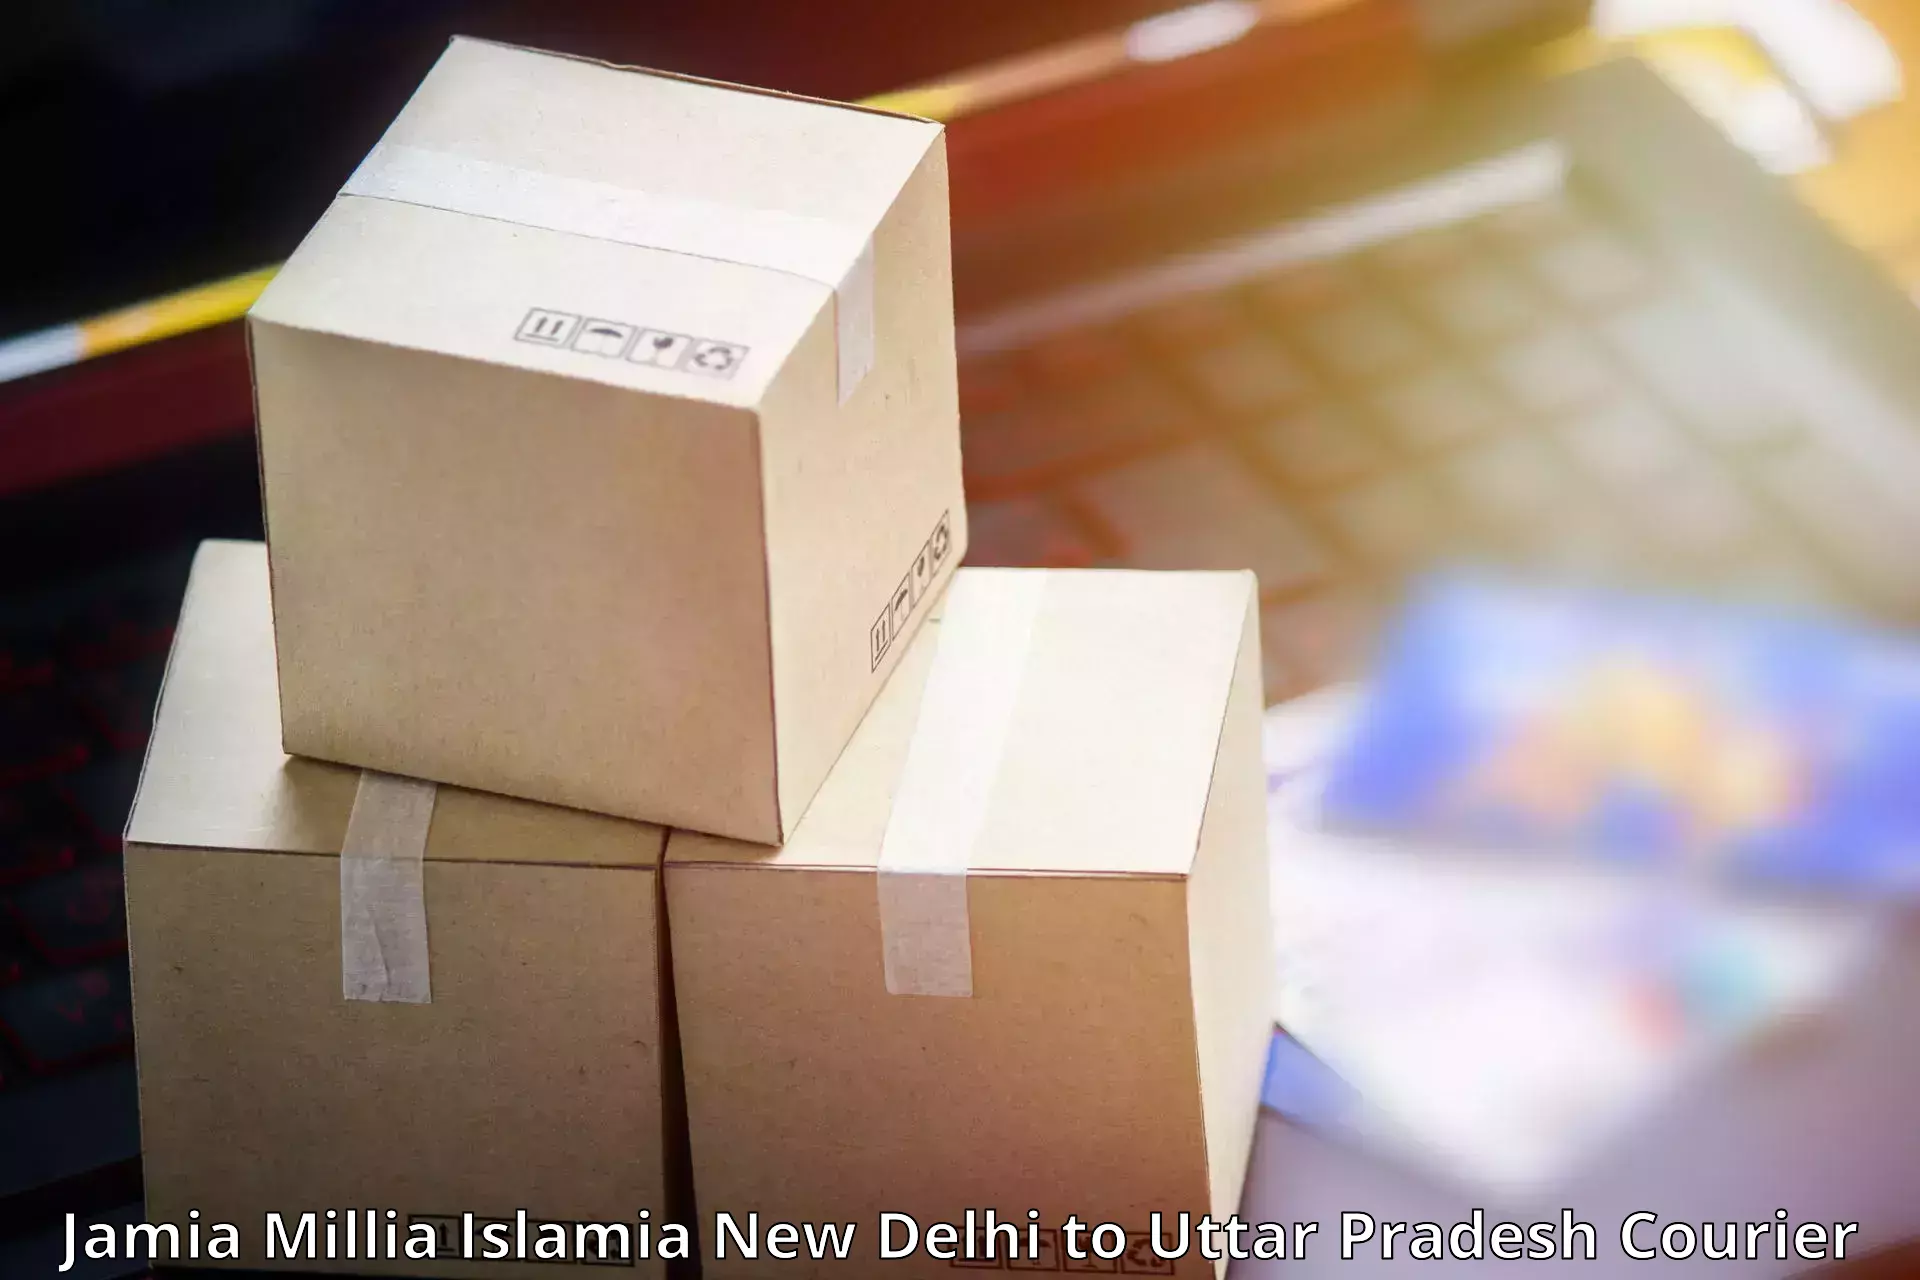 Courier service comparison in Jamia Millia Islamia New Delhi to Shahjahanpur